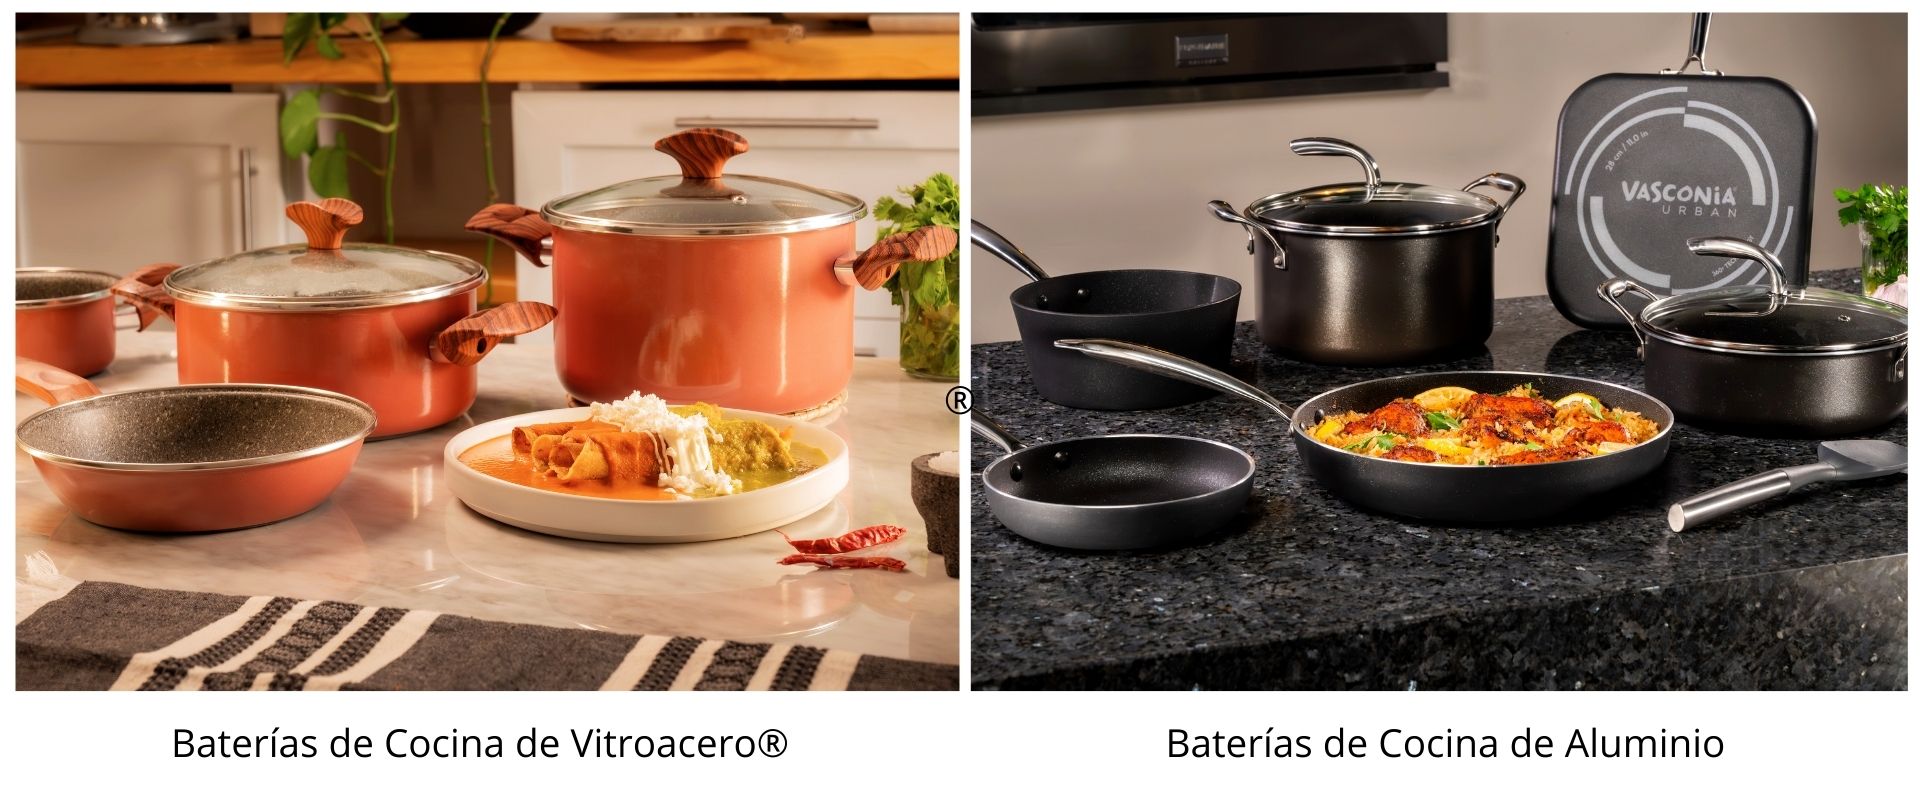 Batería de Cocina de 10 piezas Vasconia Elegance Pearl de Vitroacero –